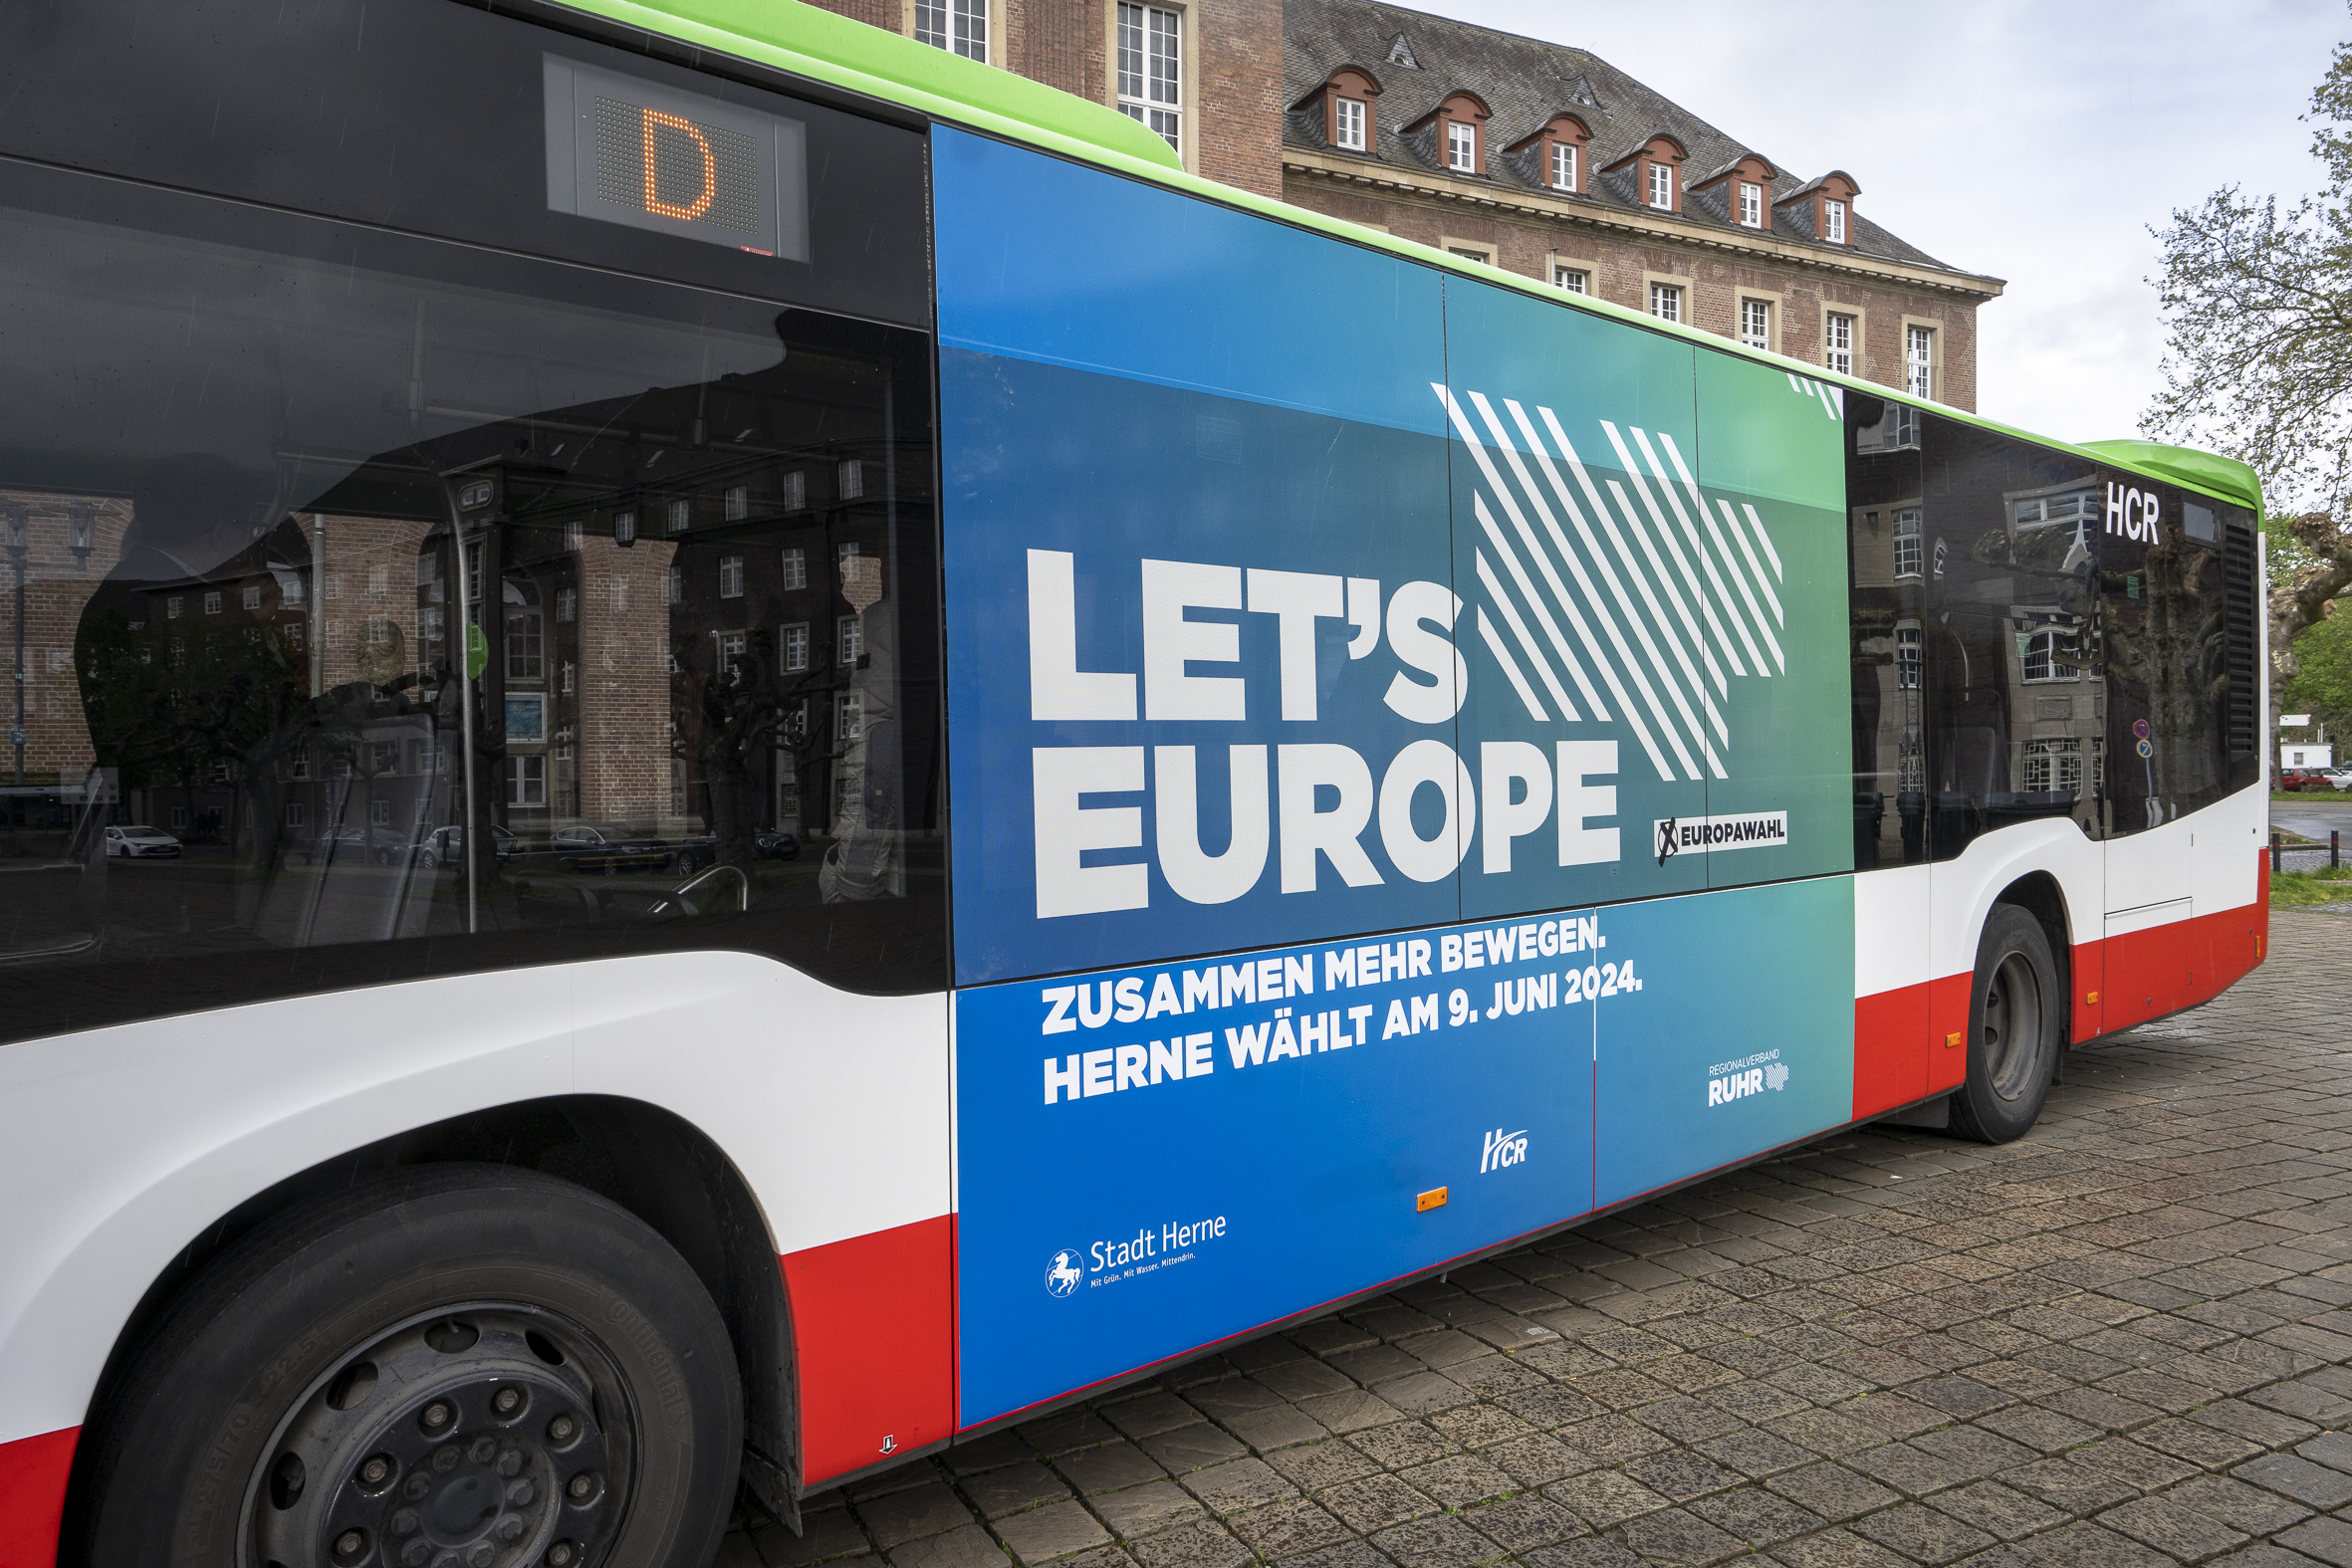 RVR-Kampagnenmotiv "Lets Europe" auf einem der Busse, die im Ruhrgebiet für die Europawahl werben. 